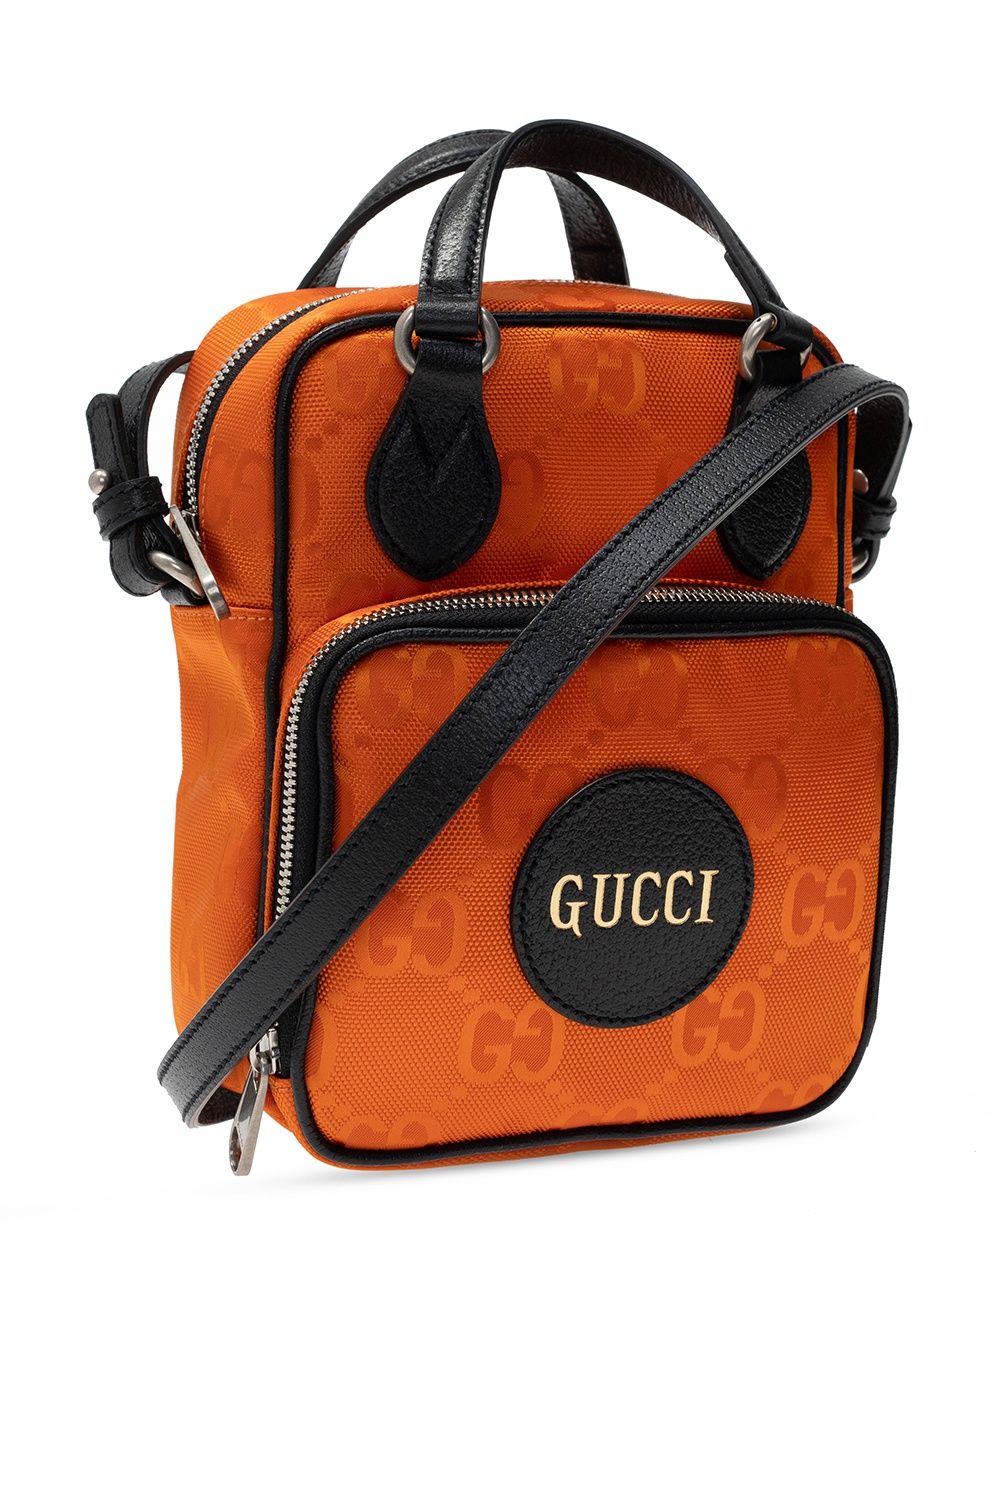 gucci for ‘Messenger’ shoulder bag